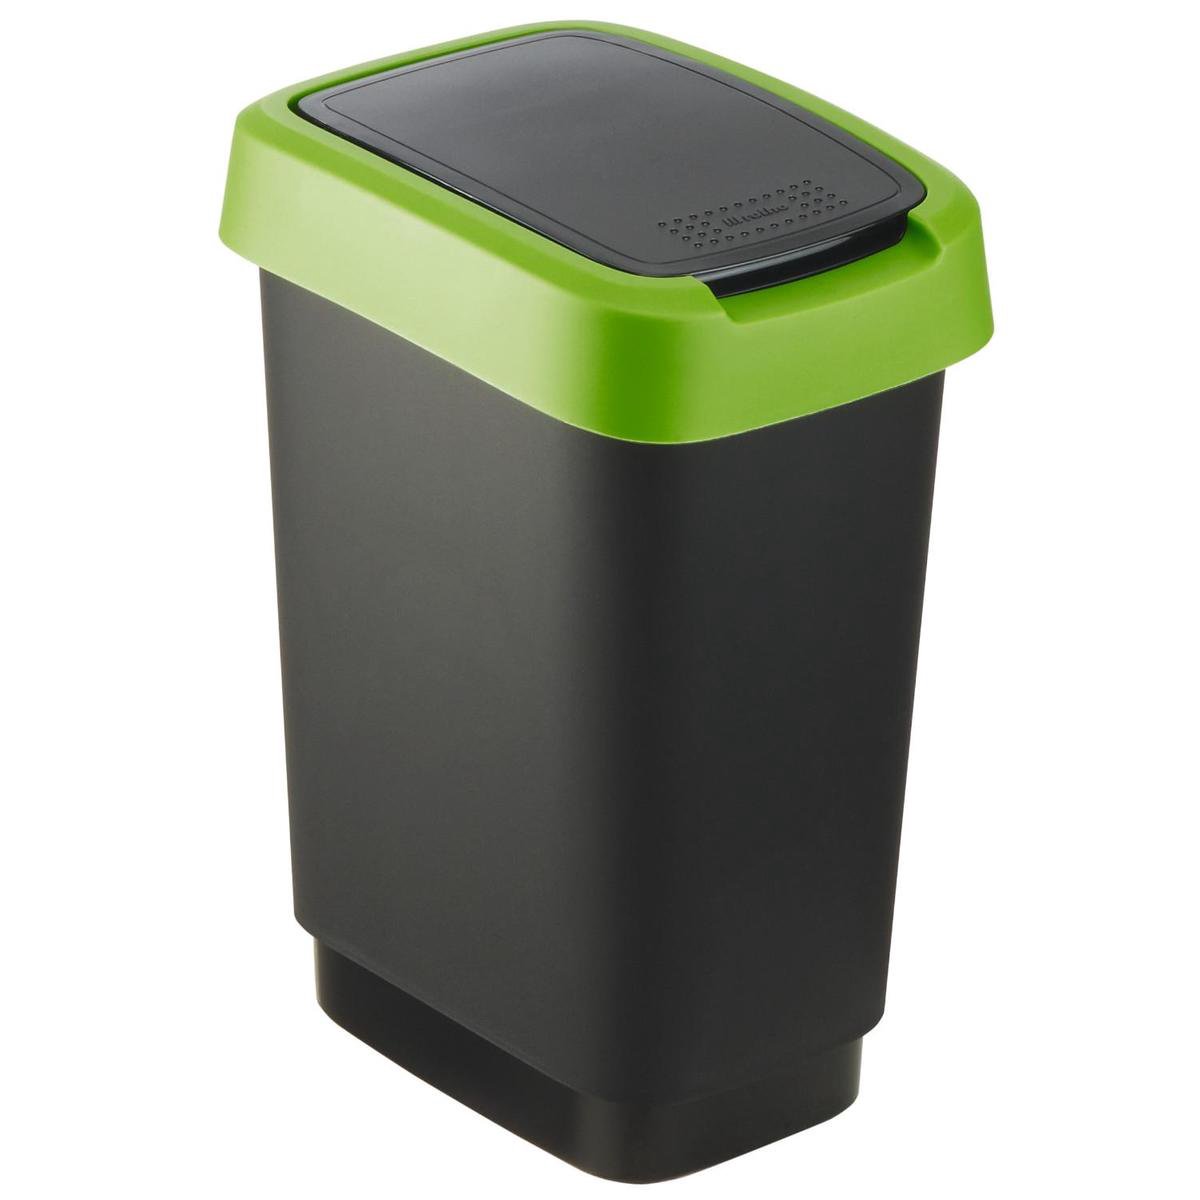 ROTHO afvalbak TWIST 10 liter groen | Prullenbak met schommel en scharnierend deksel Groen